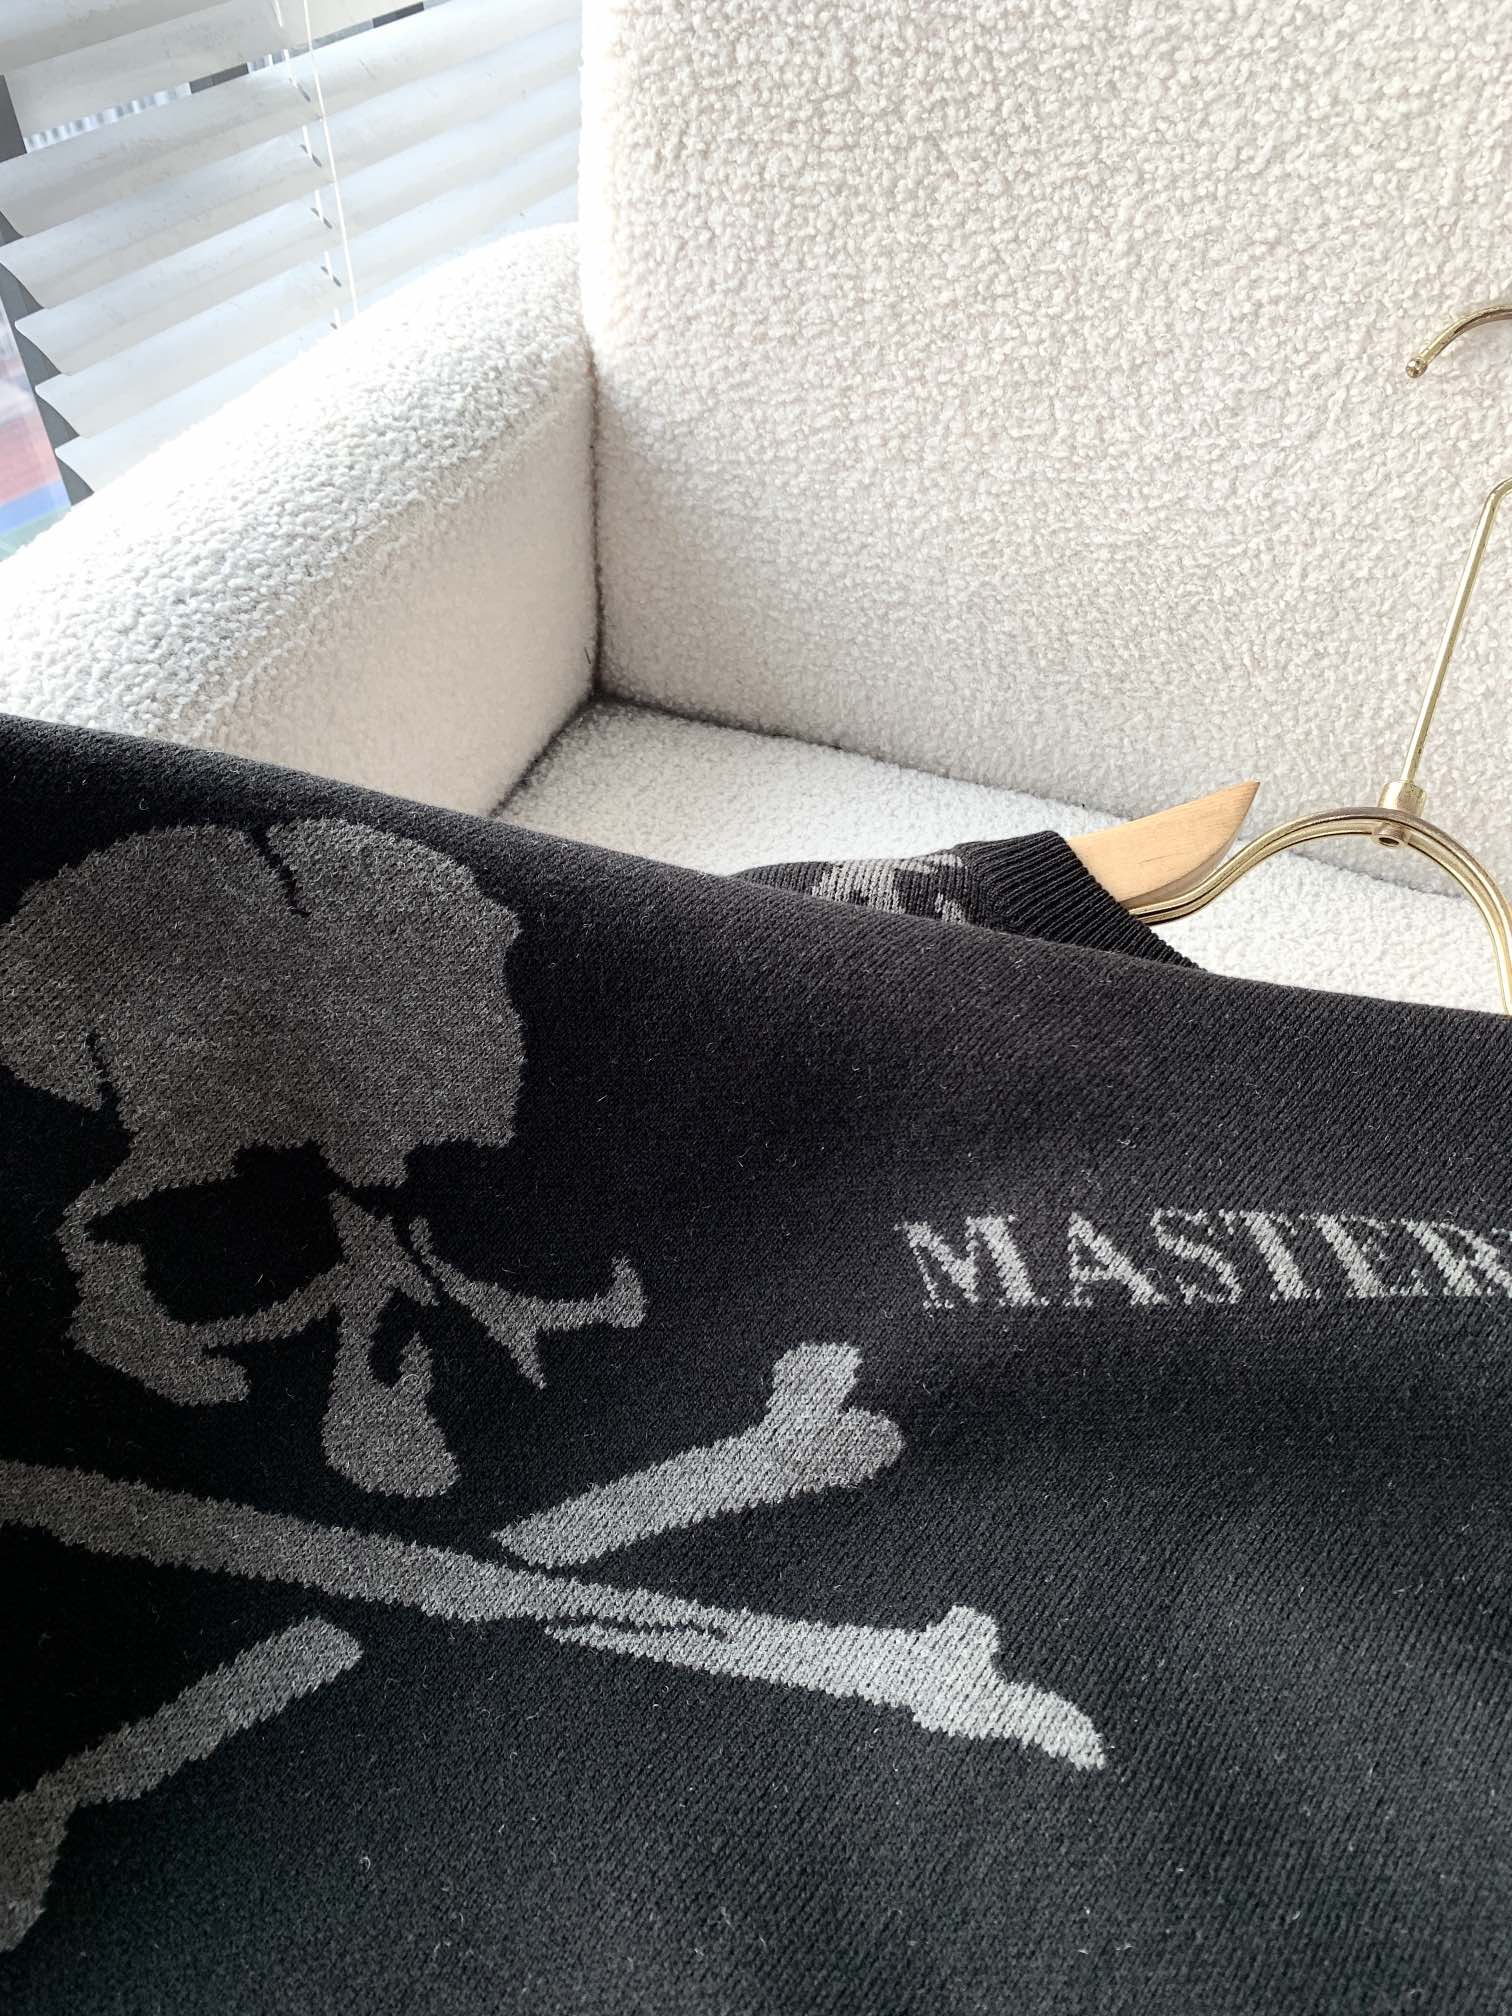 MASTERMIND ホスピタリティマインド とはコピー ウール セーター トップス 柔らかい ニット 髑髏ロゴ ブラック_7